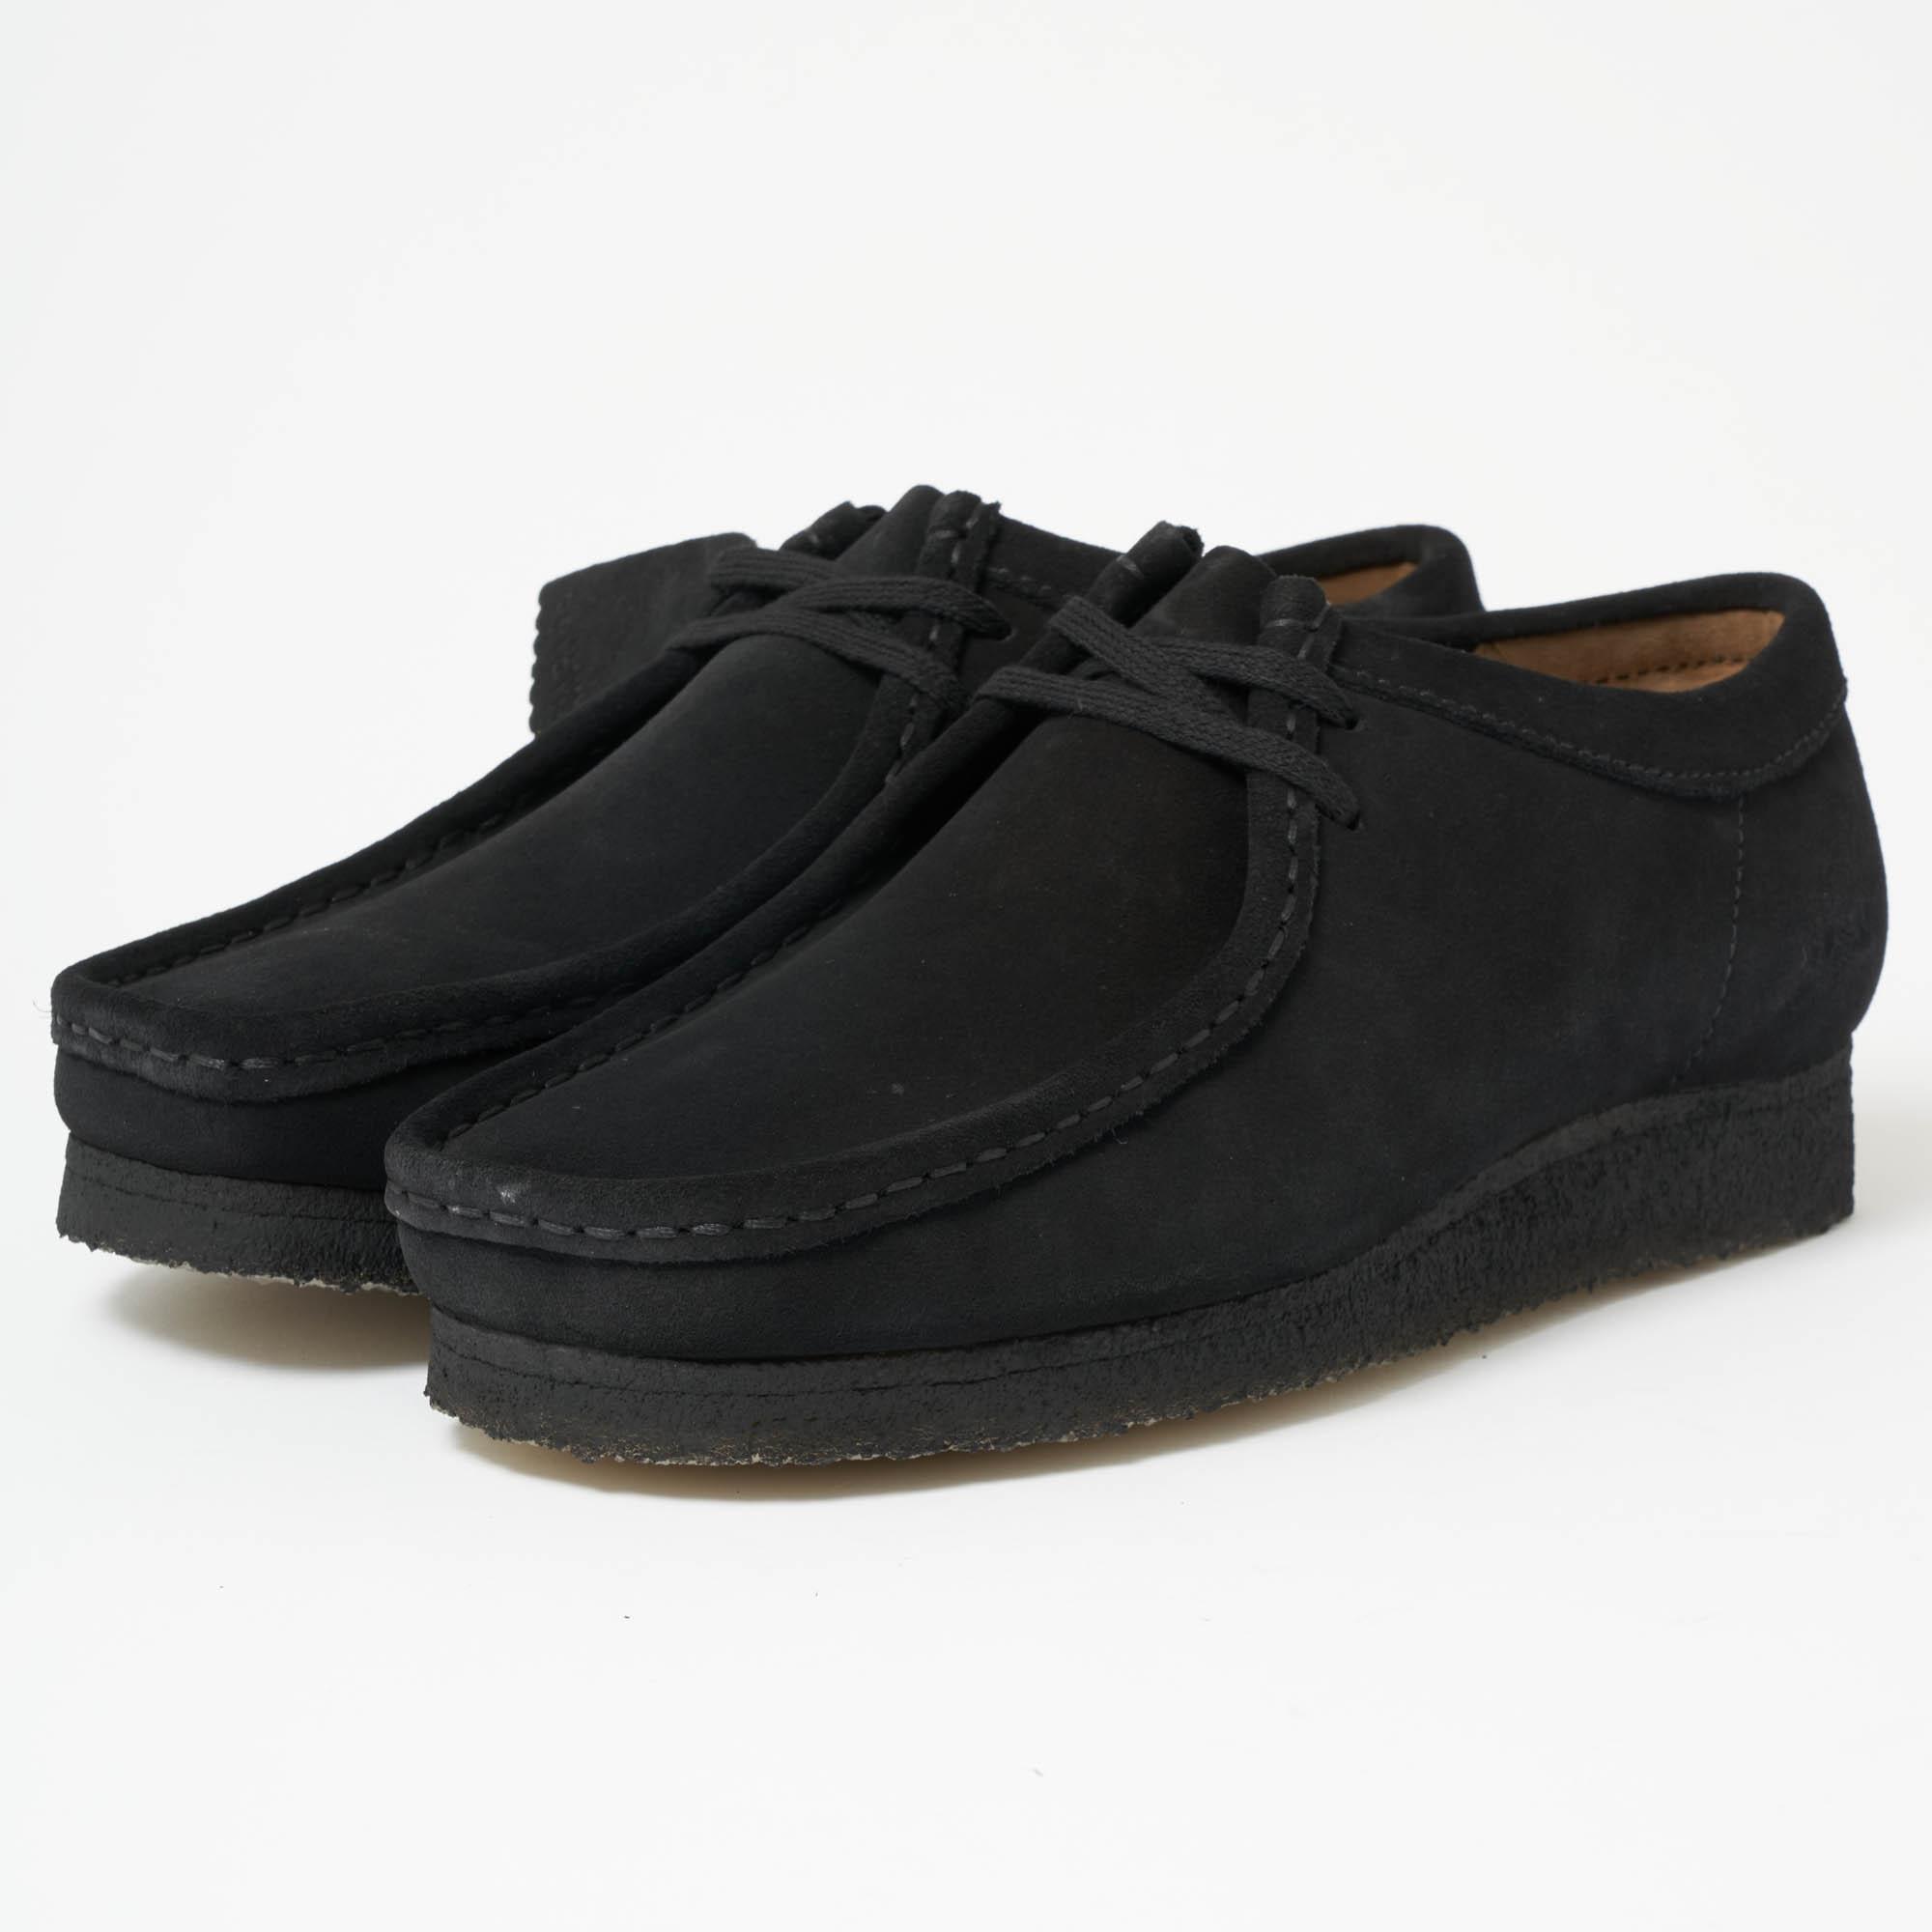 A Clarks black shoes